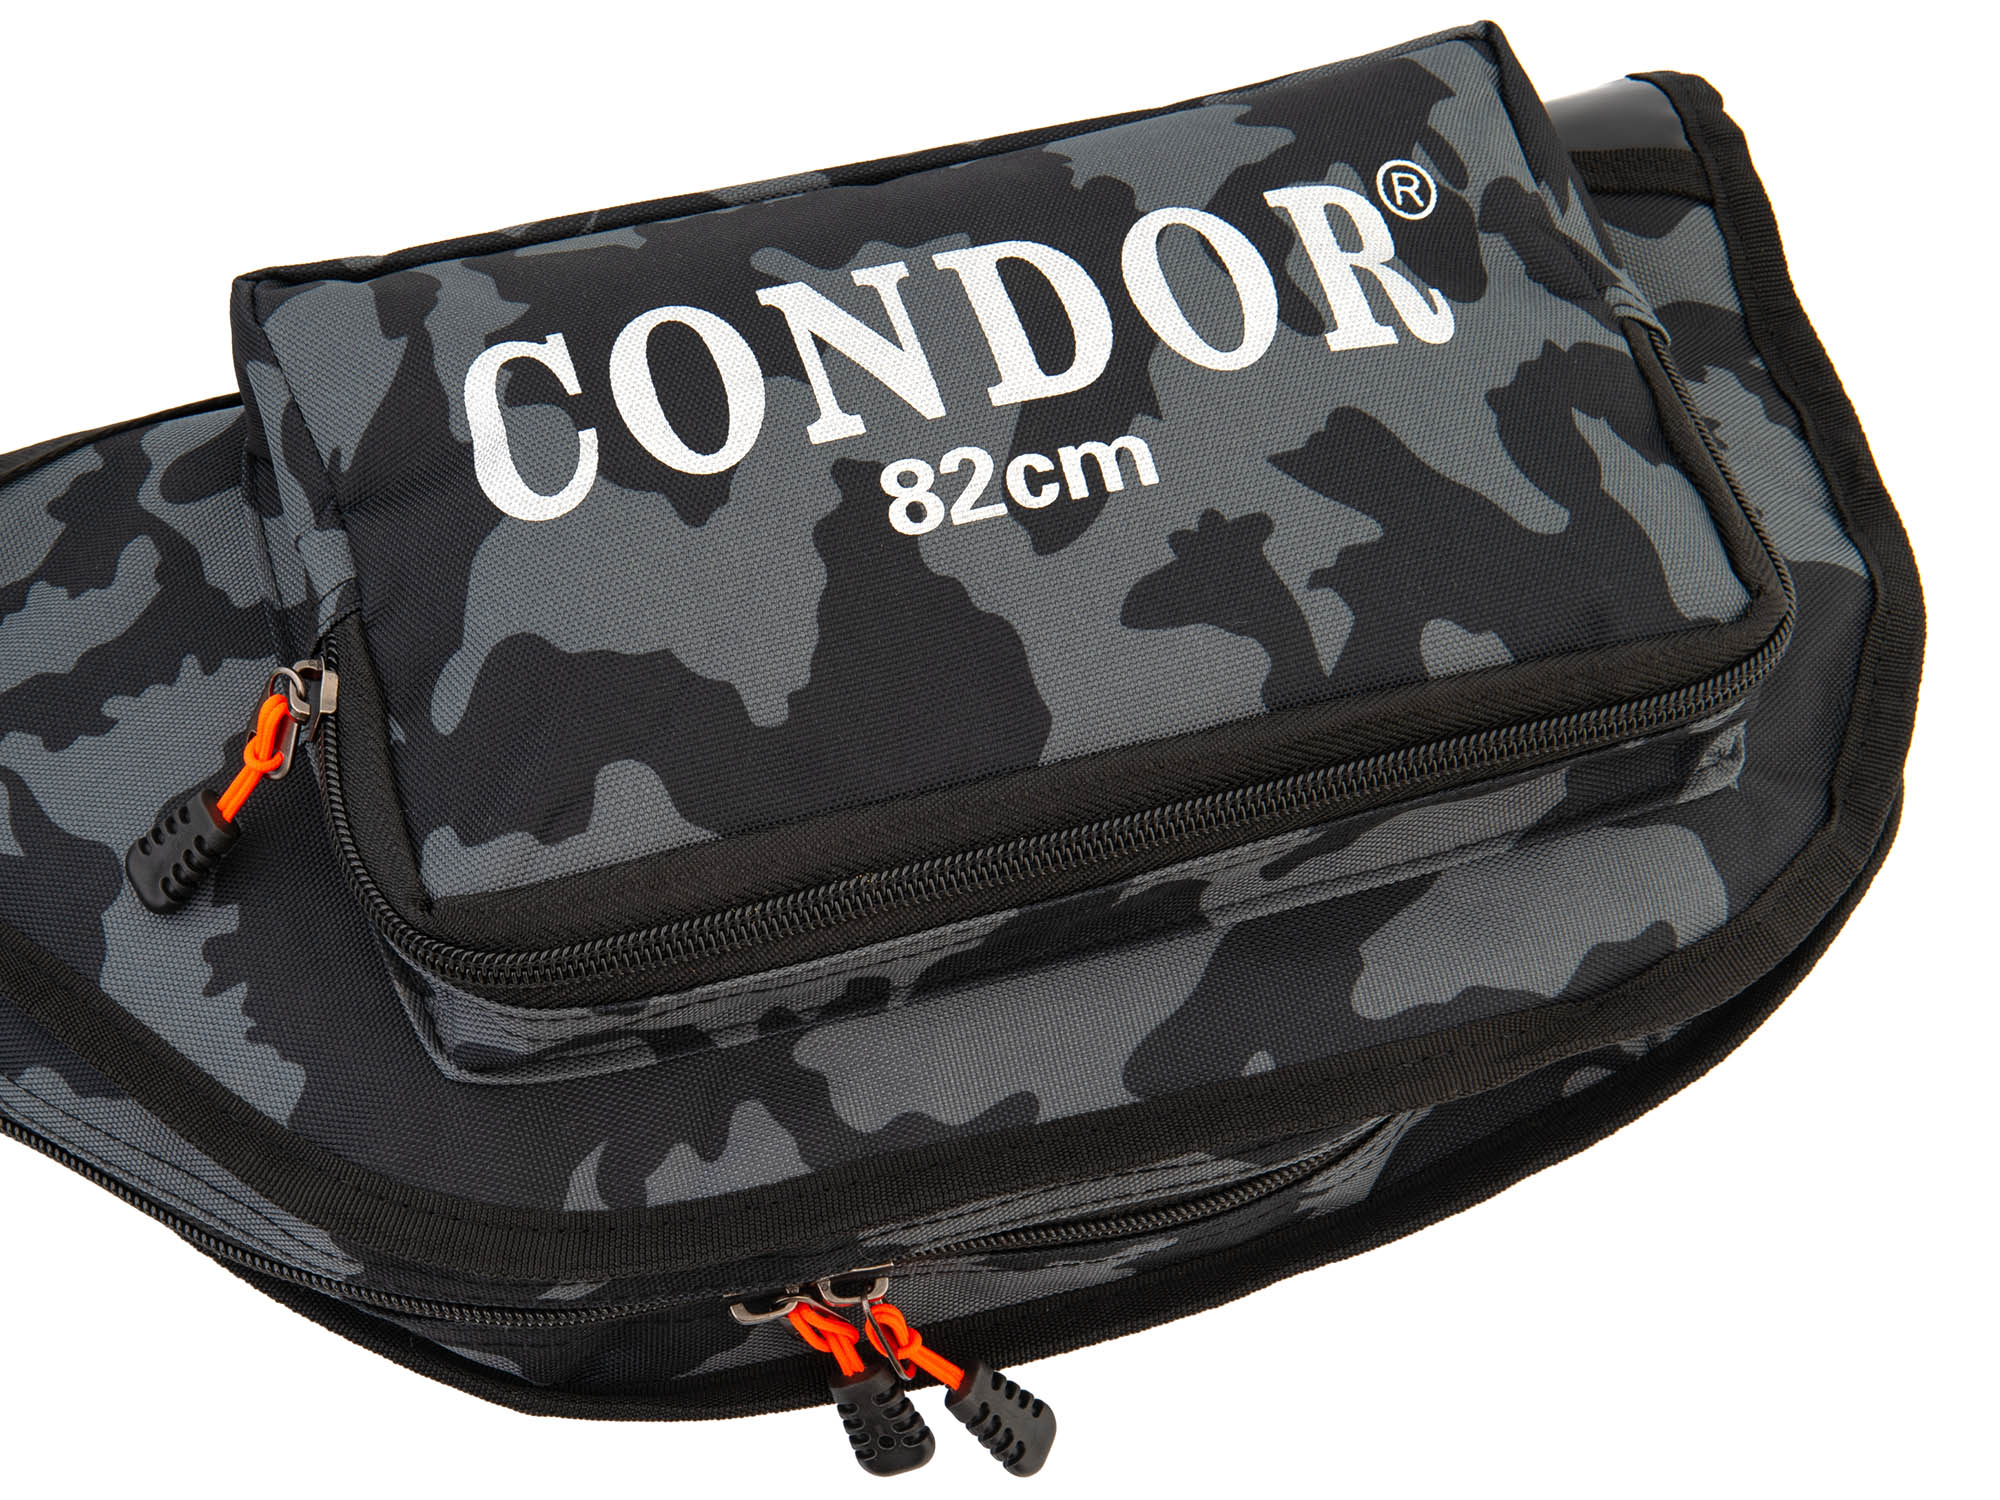 Чехол для зимних удочек "Condor" L-82, жёсткий, цвет чёрно-серый КМФ